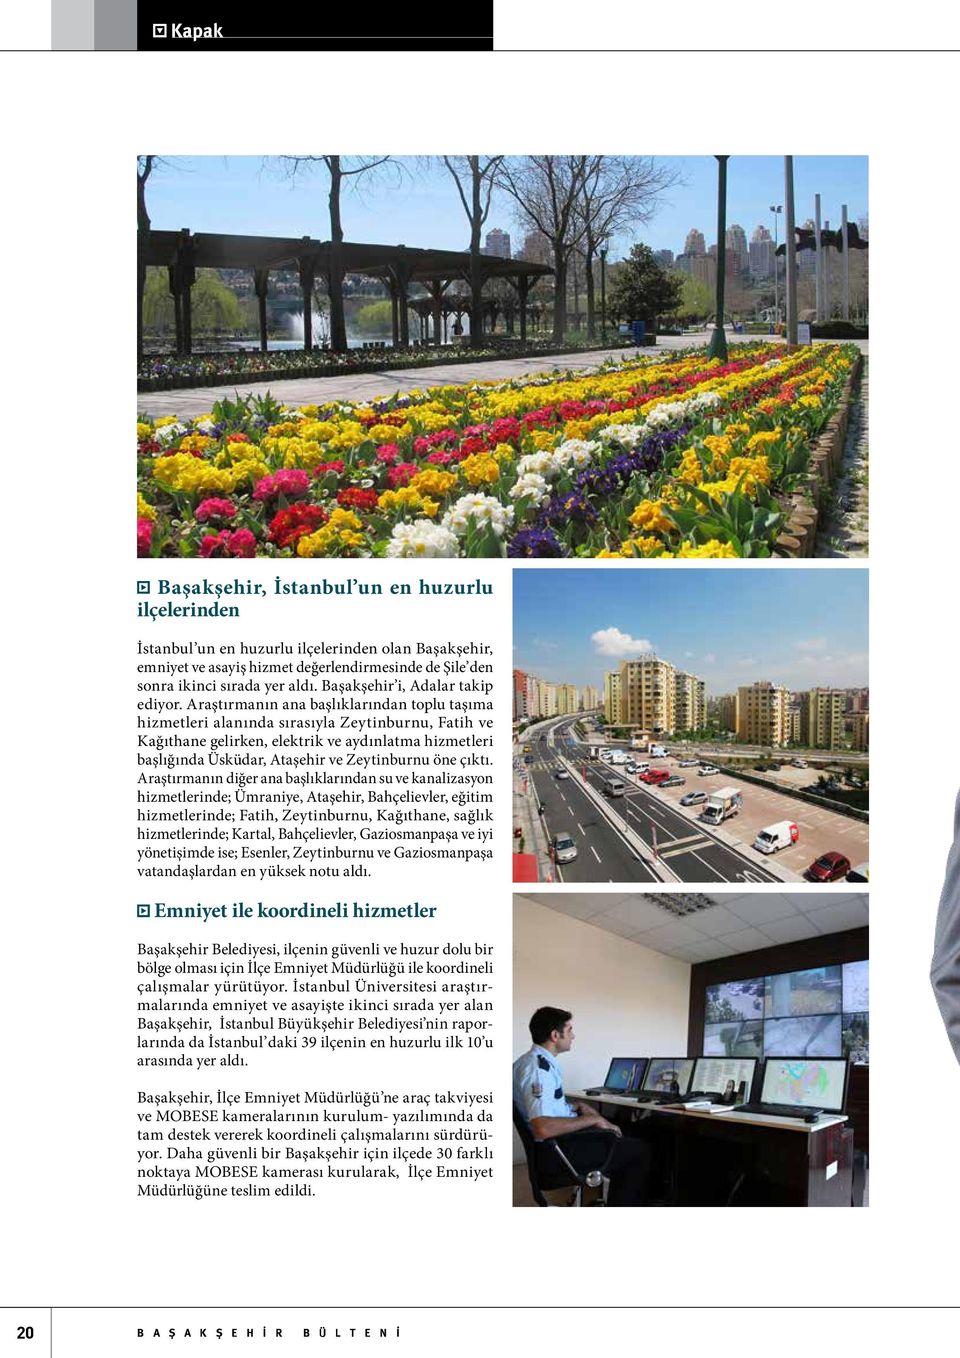 Araştırmanın ana başlıklarından toplu taşıma hizmetleri alanında sırasıyla Zeytinburnu, Fatih ve Kağıthane gelirken, elektrik ve aydınlatma hizmetleri başlığında Üsküdar, Ataşehir ve Zeytinburnu öne